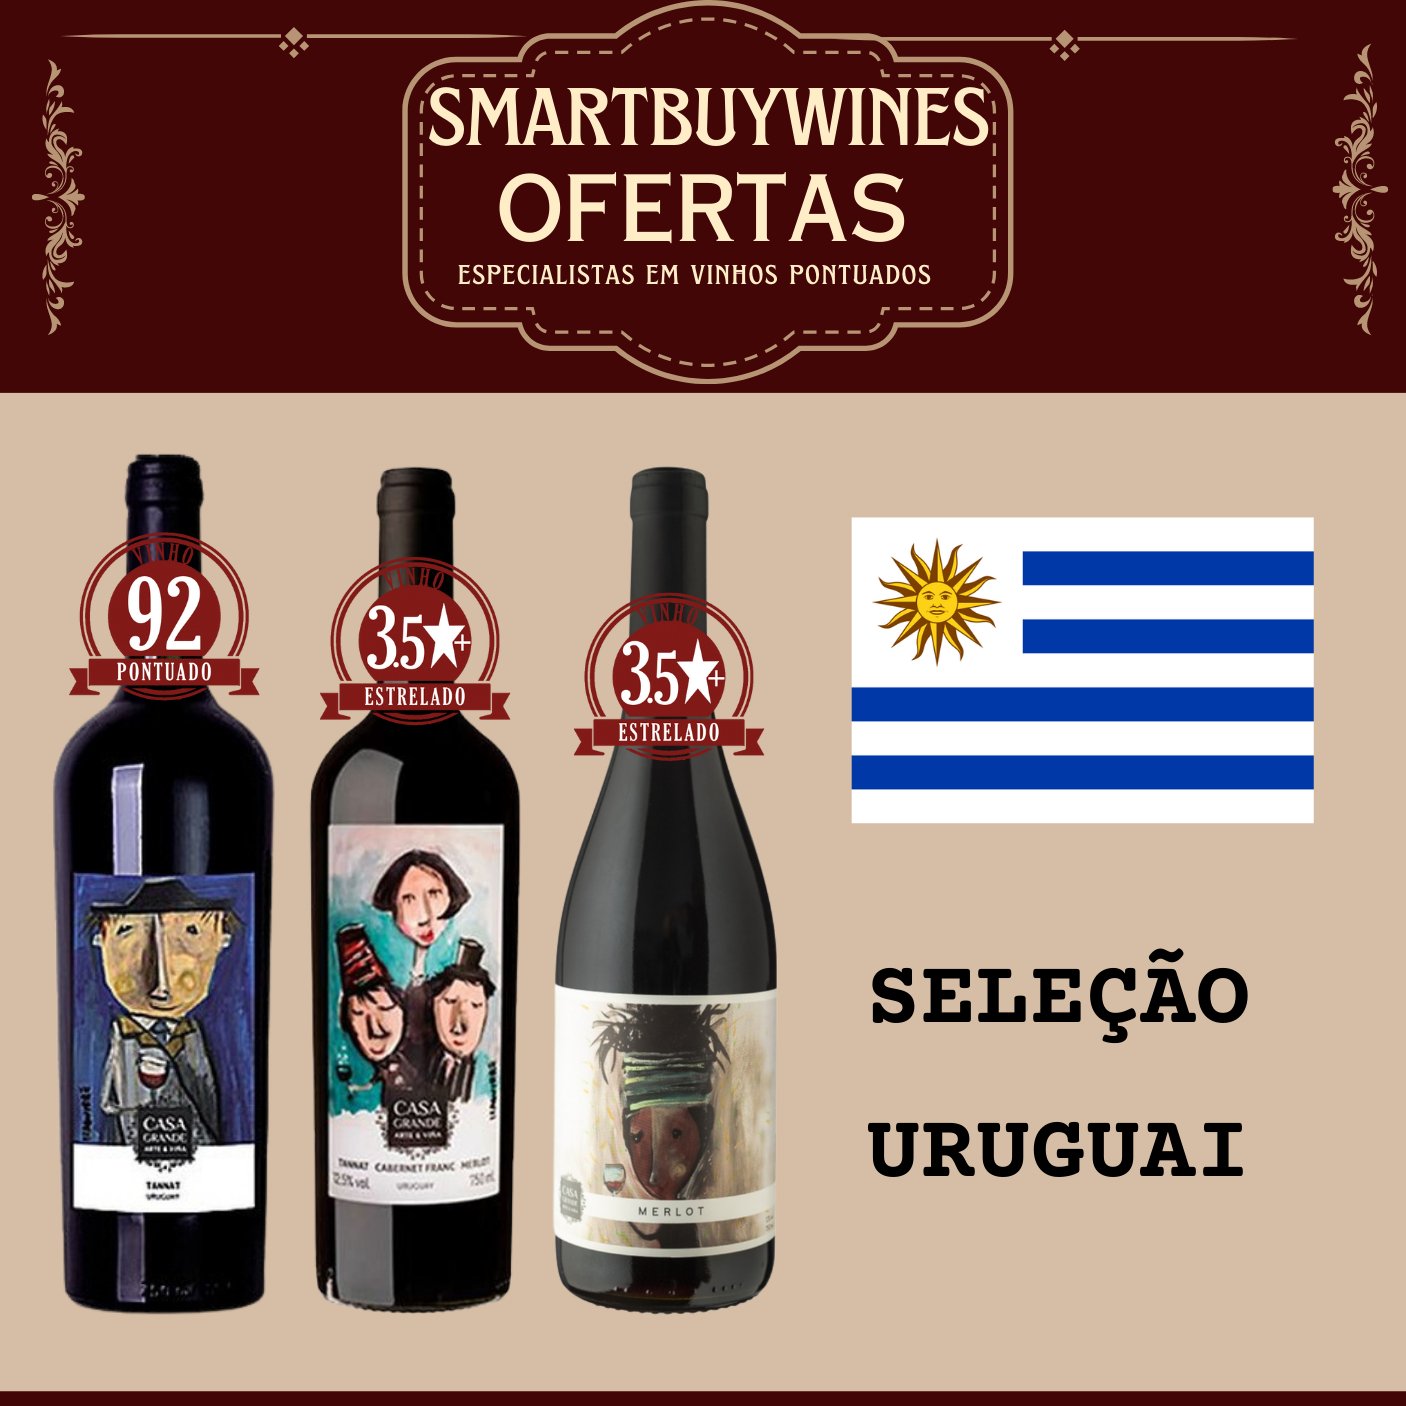 Seleção em oferta - Uruguai - caixa de 3 vinhos - SmartBuyWines.com.br